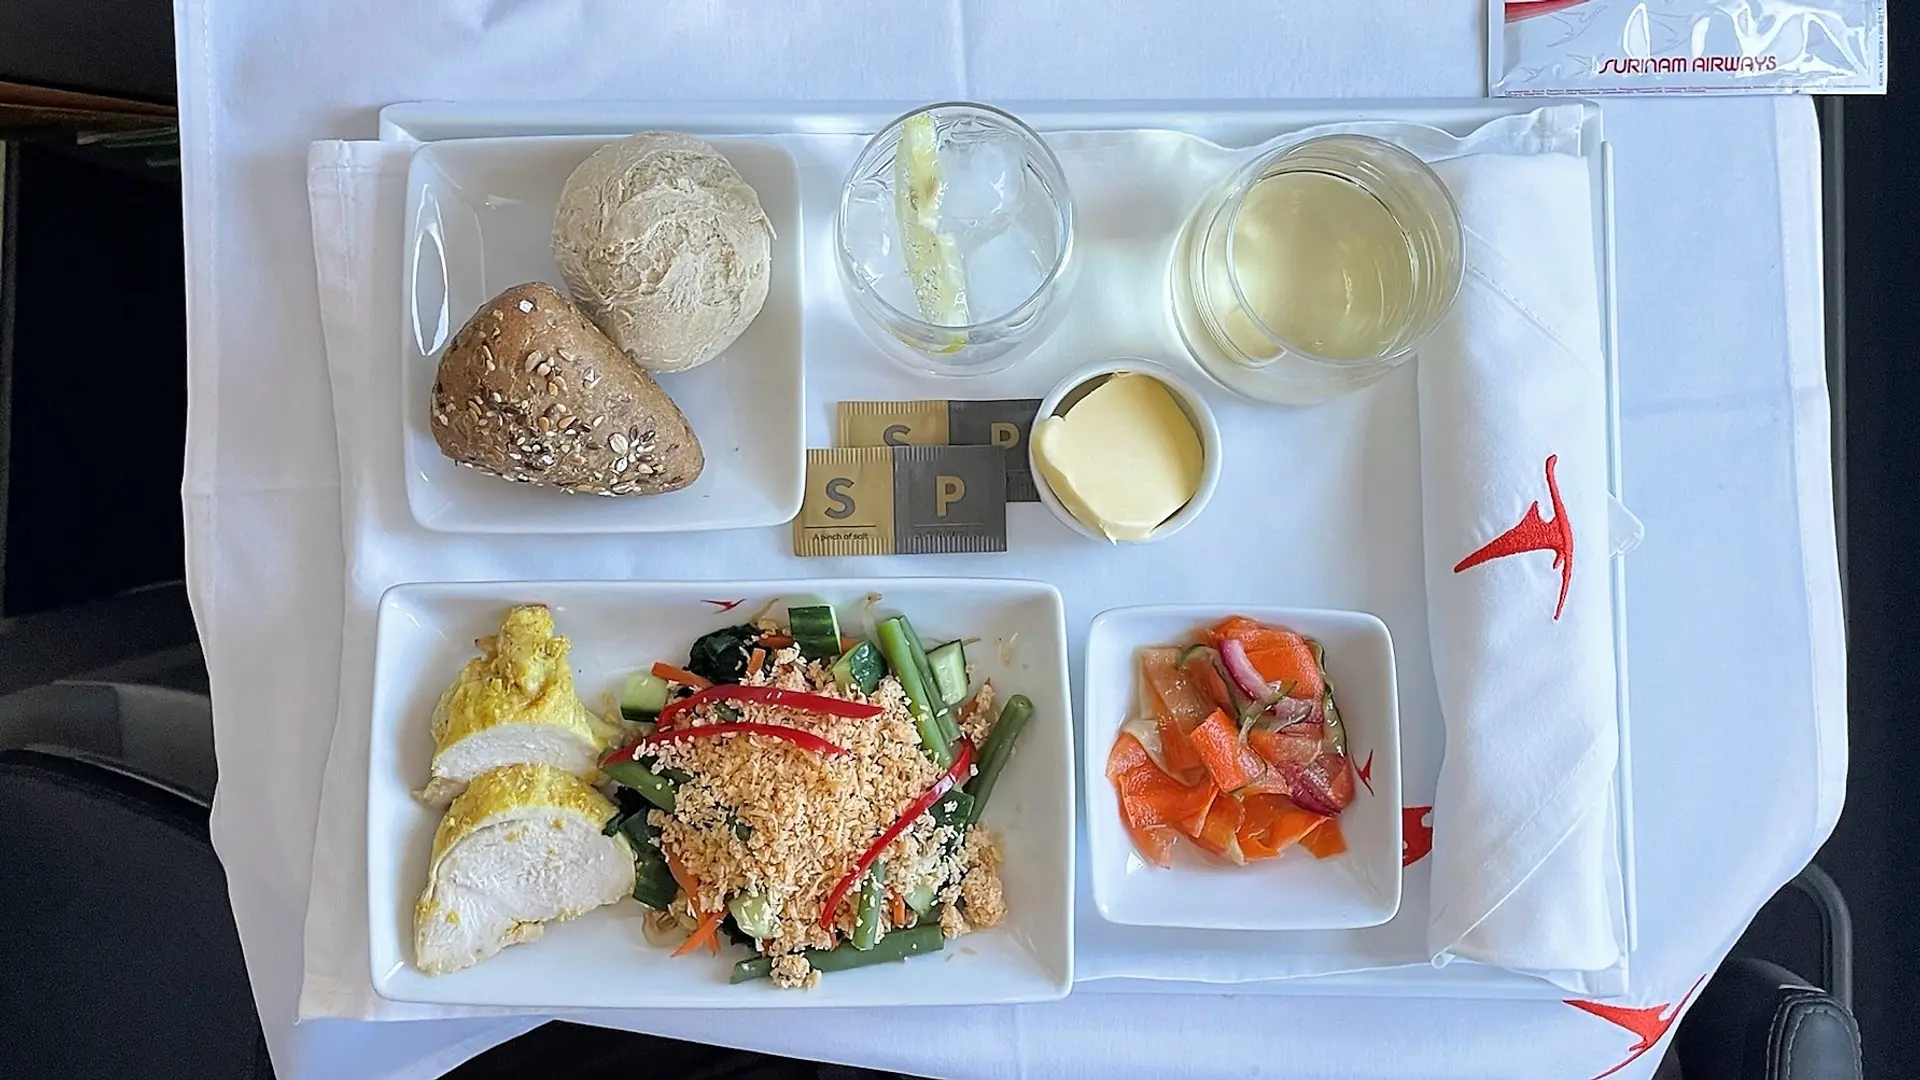 Airline review Cuisine - Surinam Airways - 1